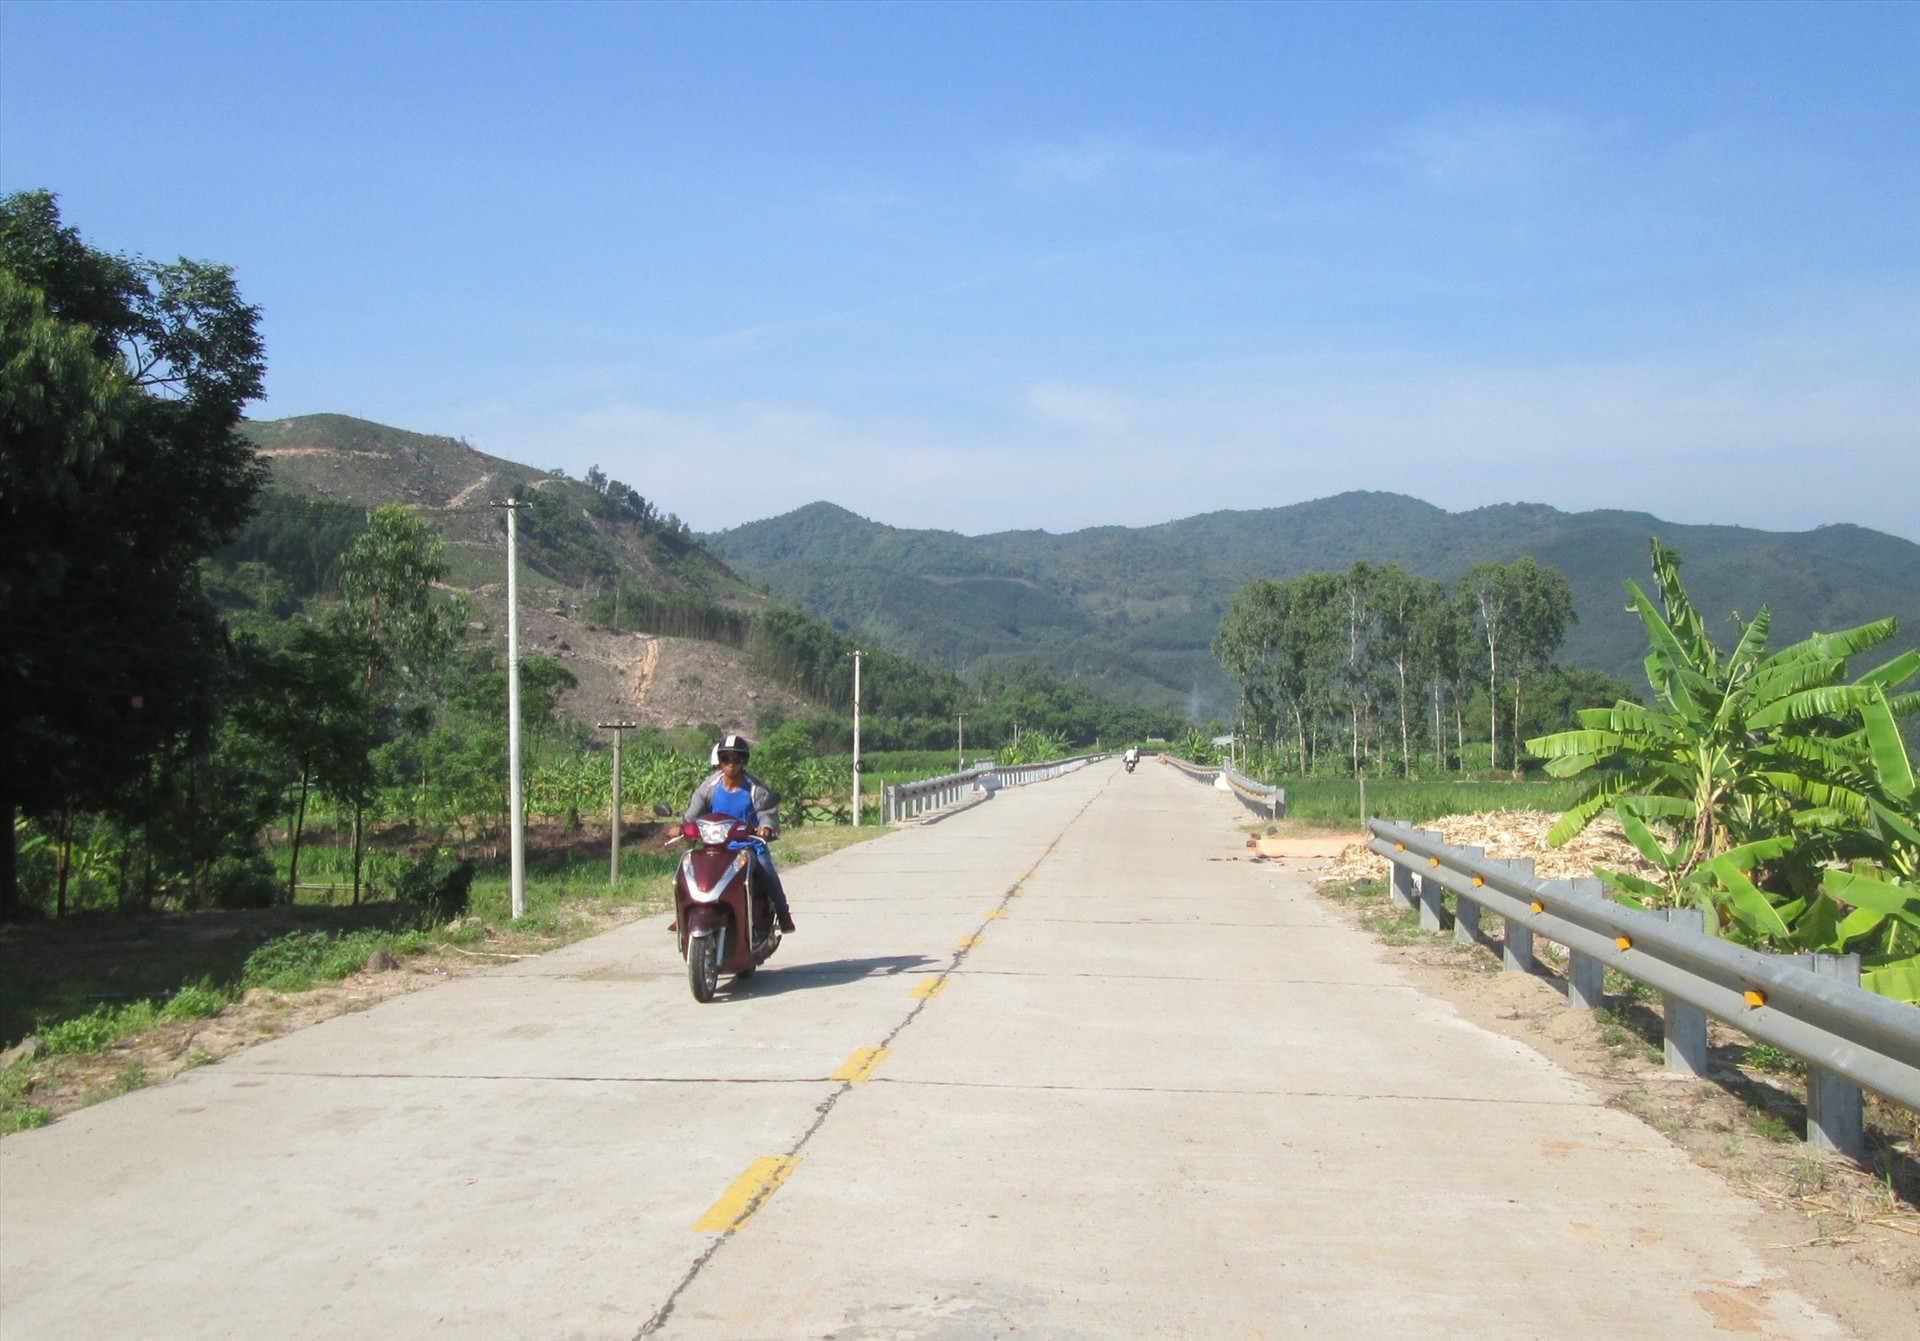 Hạ tầng giao thông ở huyện miền núi Nông Sơn được quan tâm đầu tư xây dựng kiên cố, khang trang. Ảnh: MAI NHI